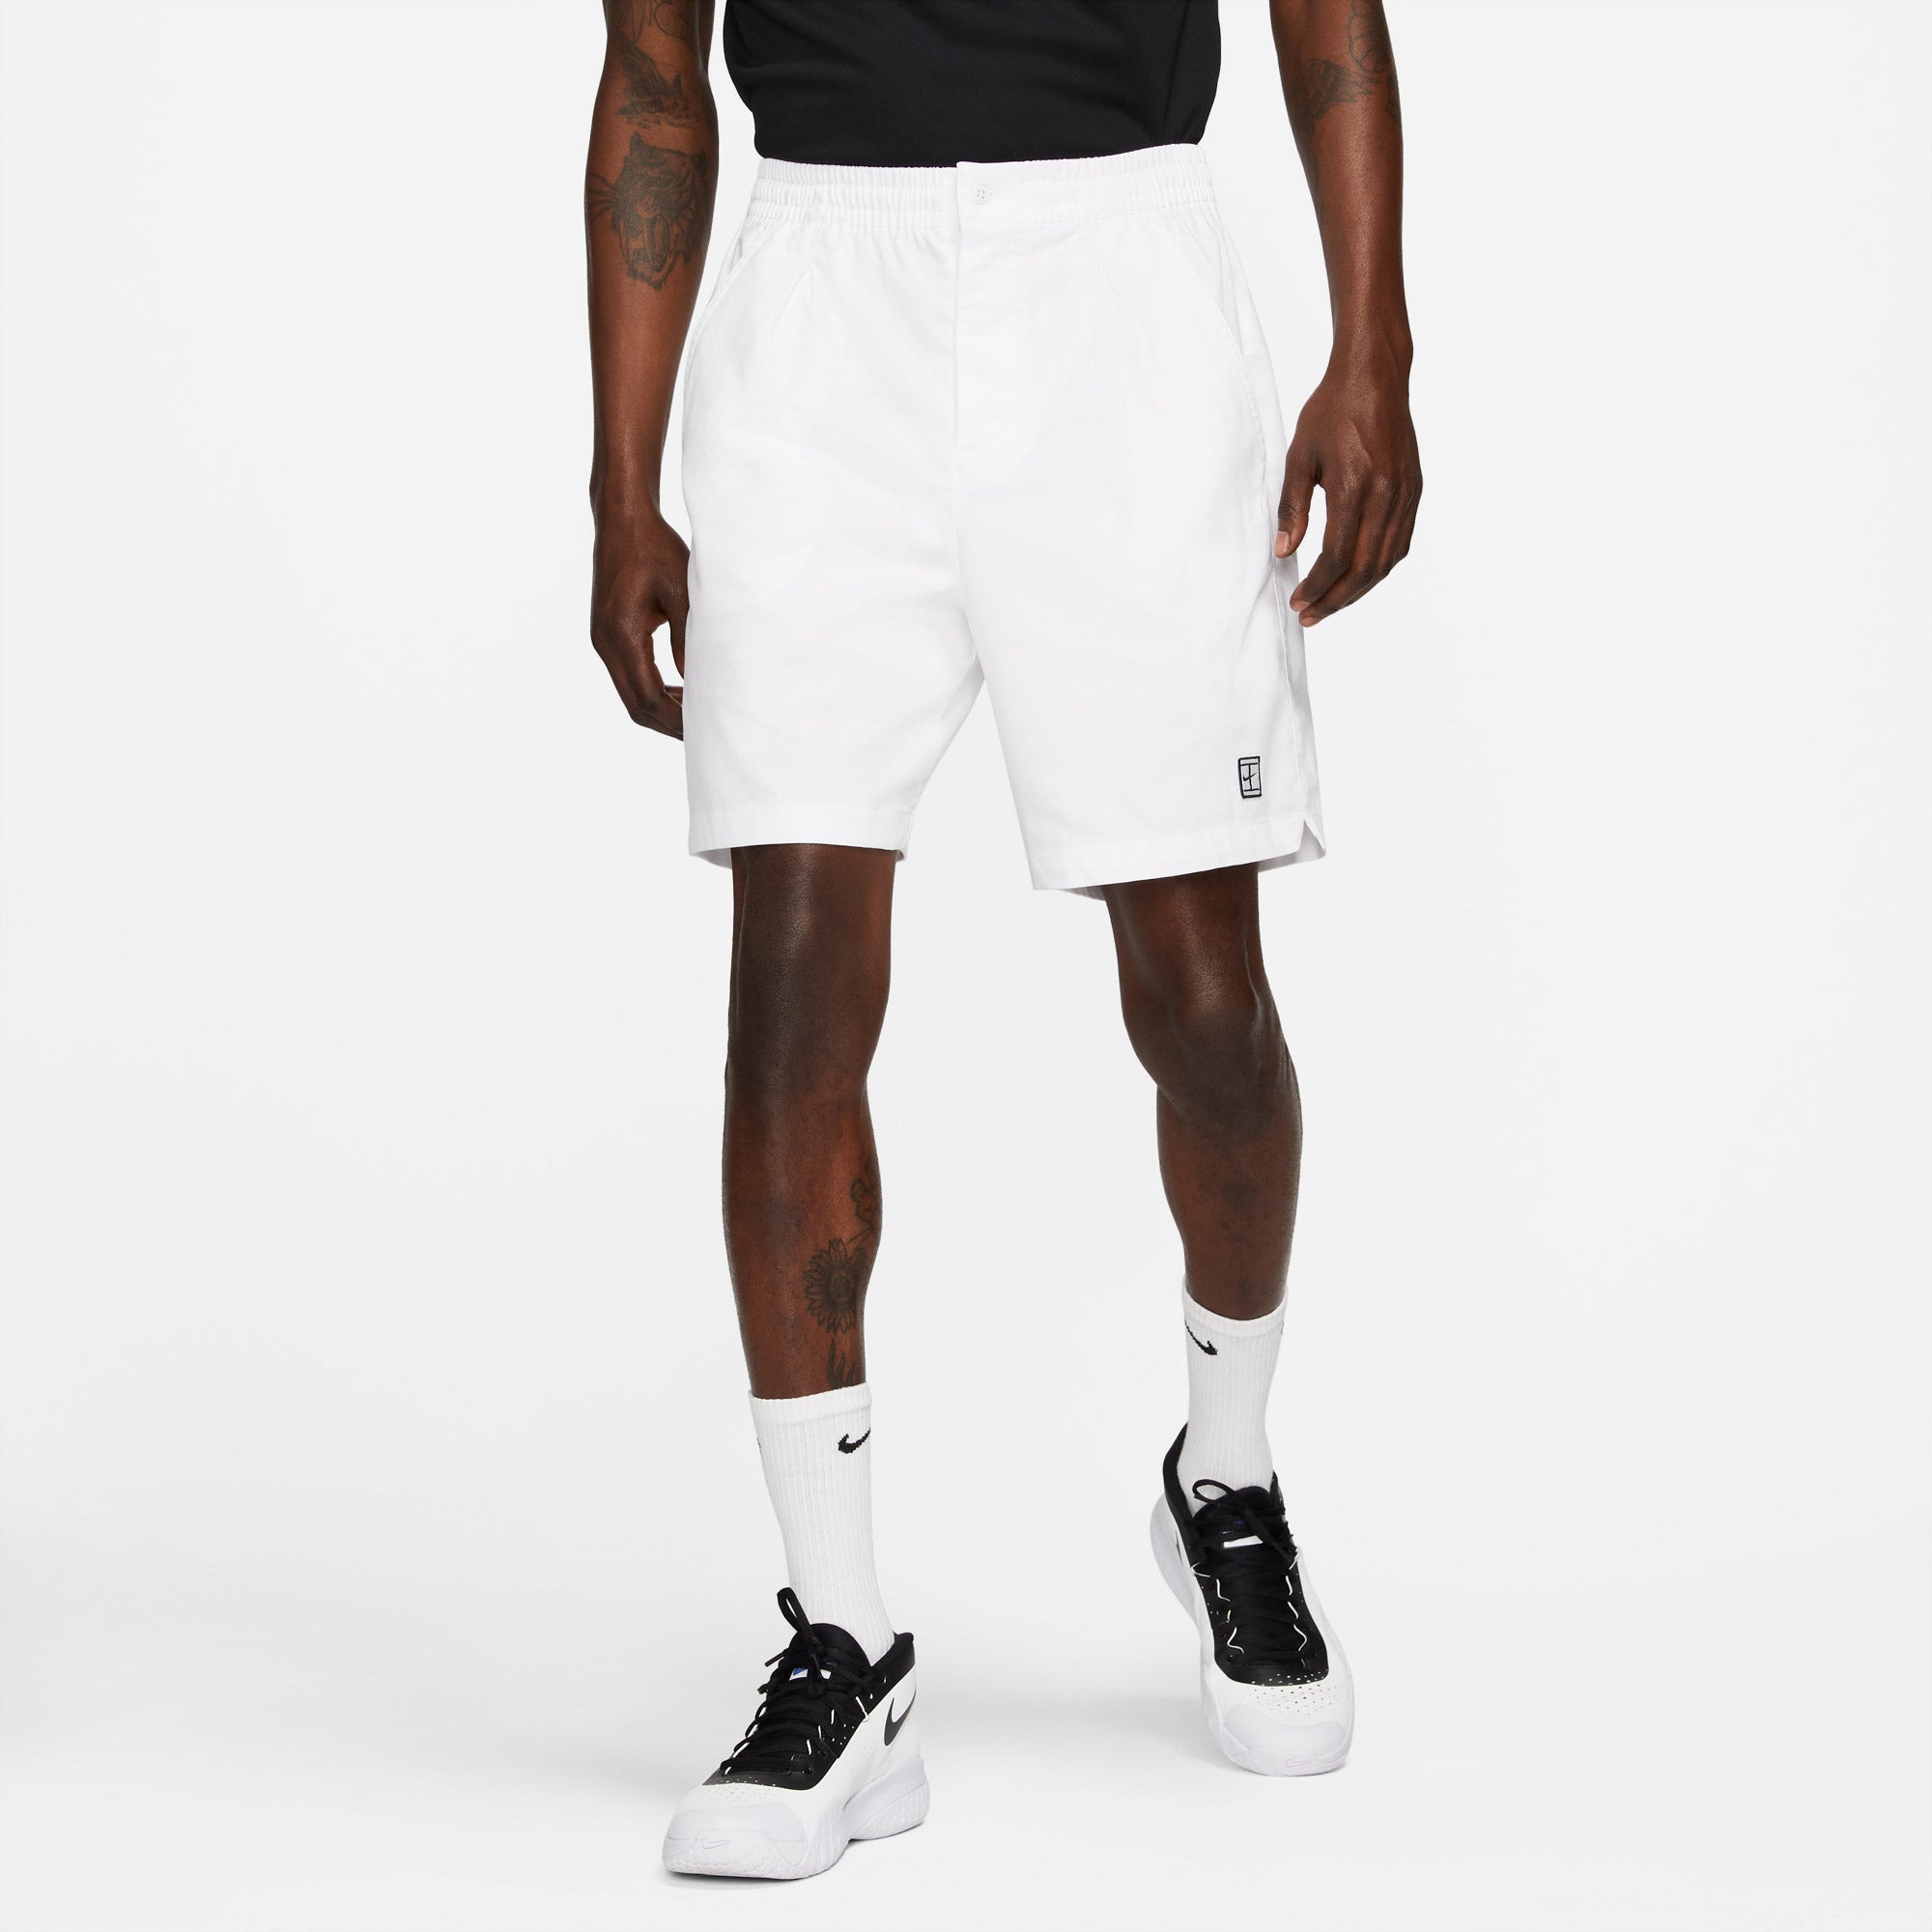 Nike Heritage Men's Tennis Shorts White (1)